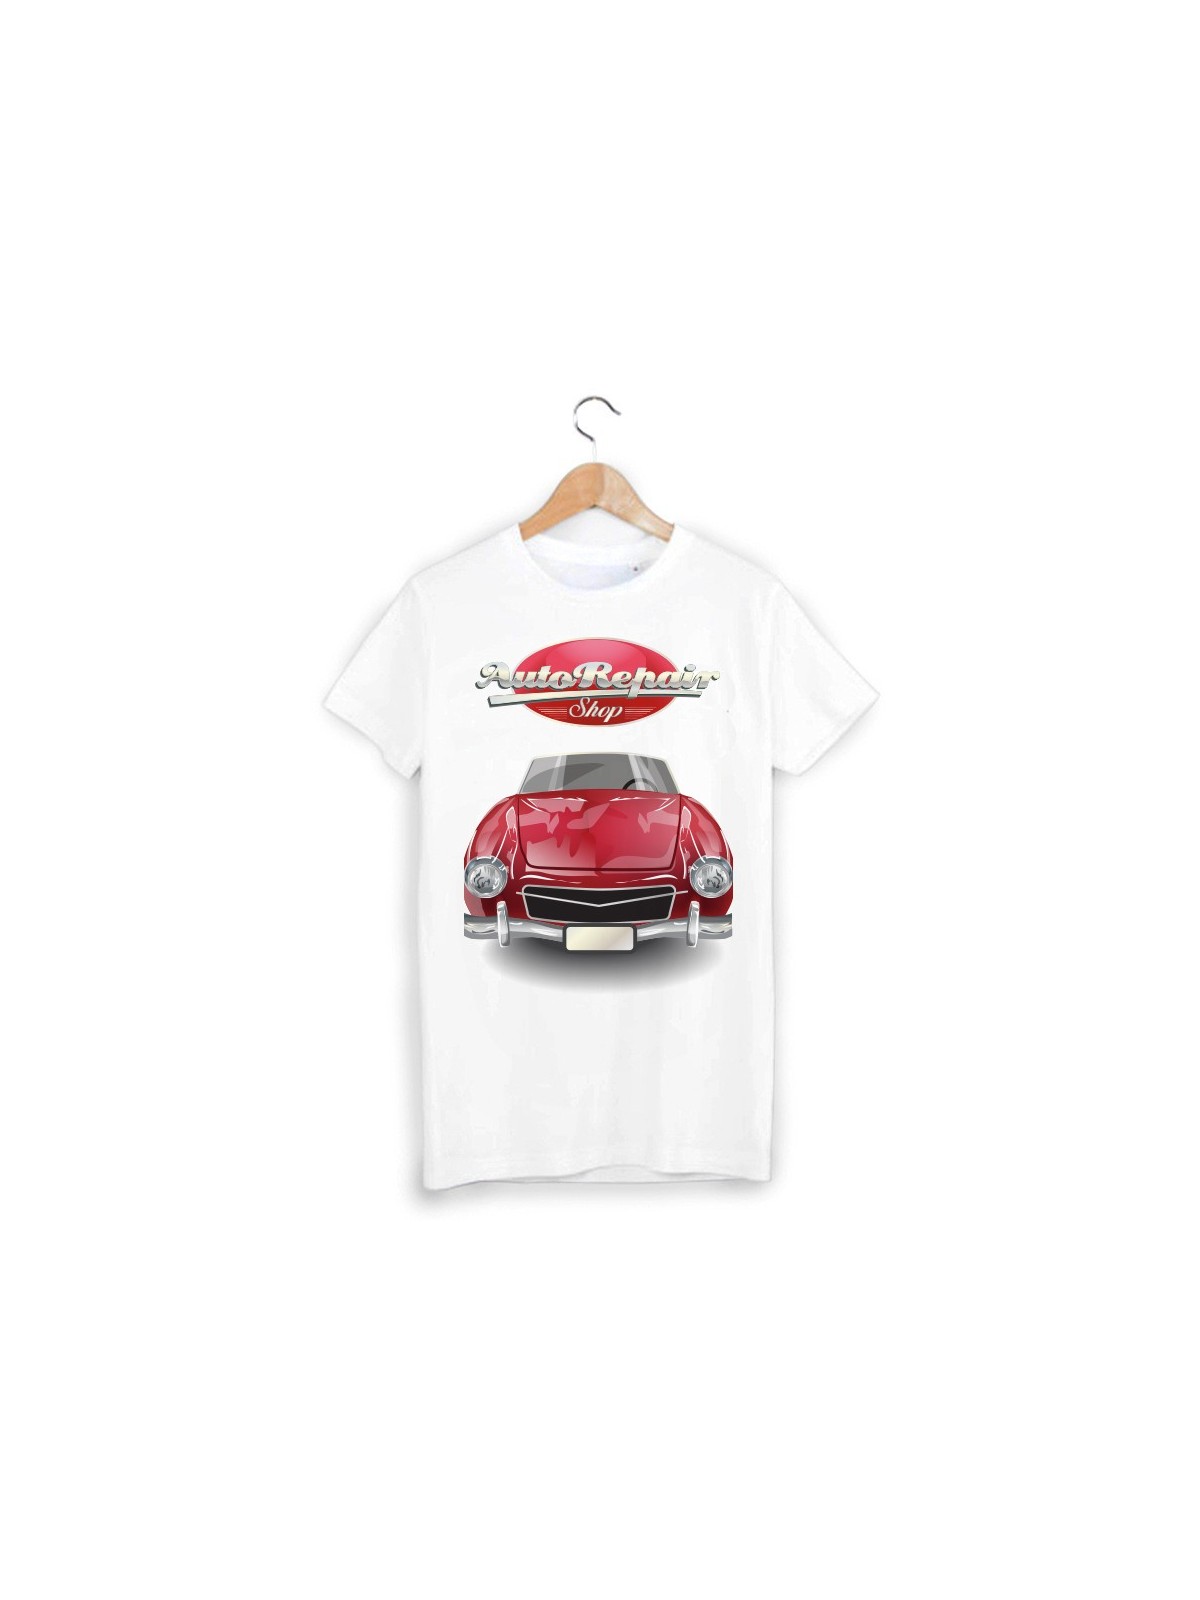 T-Shirt voiture ref 1417